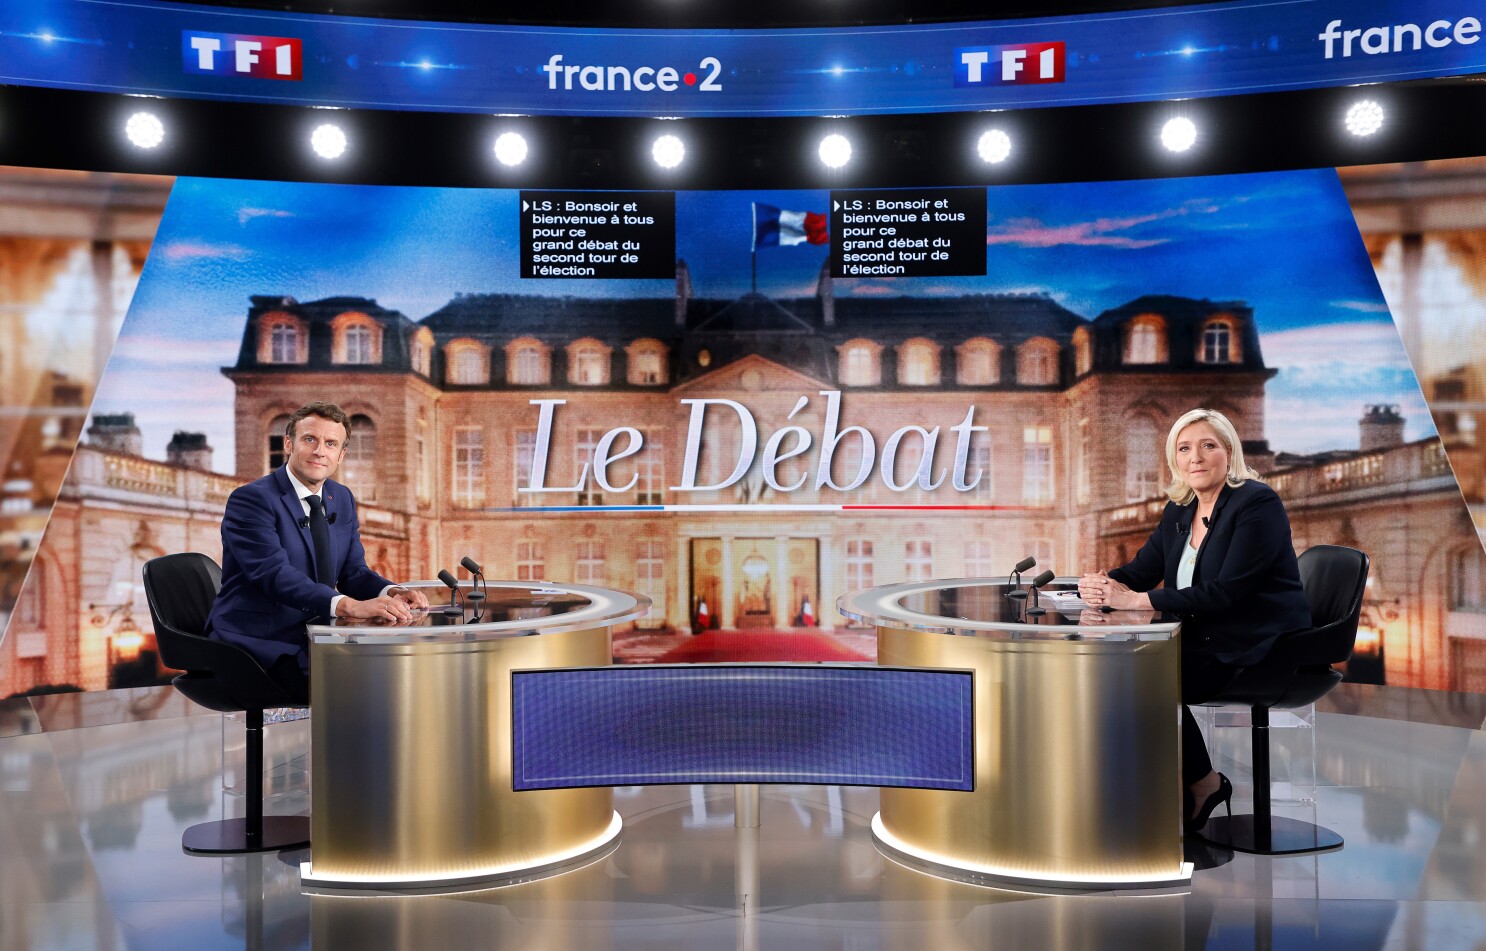 Ce spun sondajele de opinie. Cine a câștigat duelul televizat, Emmanuel Macron sau Marine Le Pen?